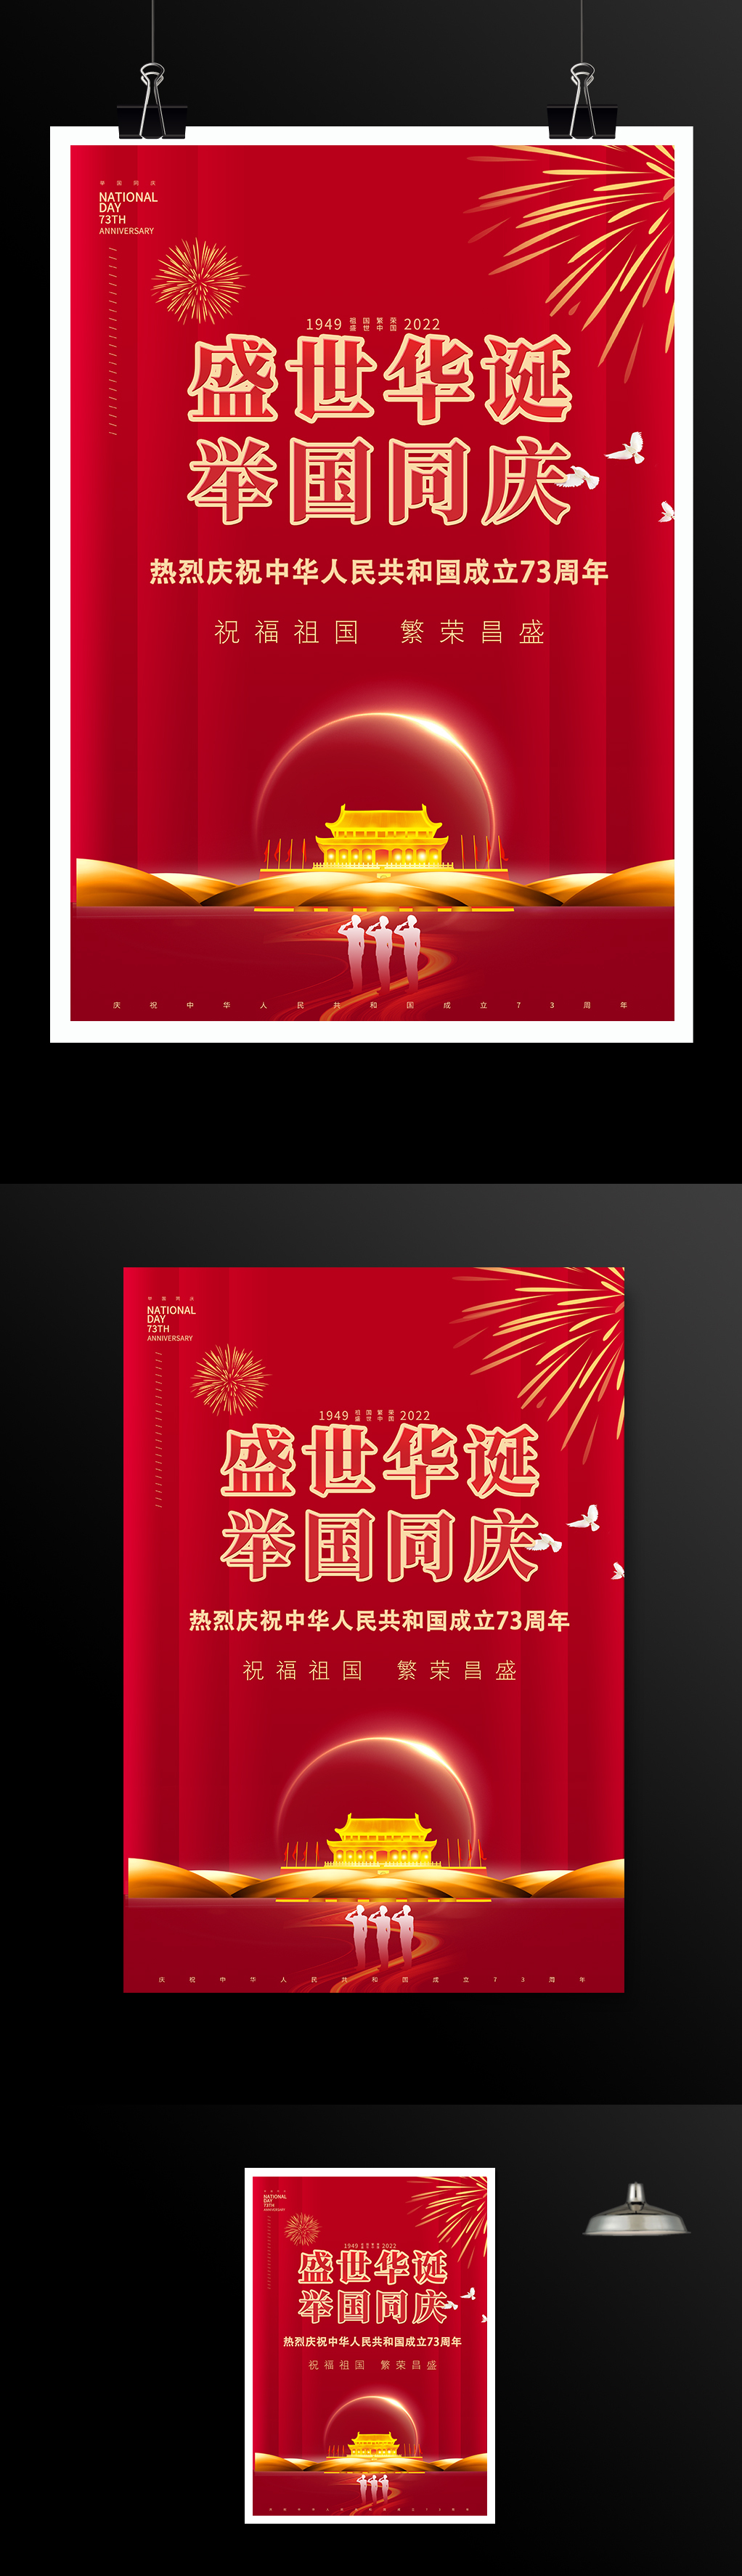 祝福祖国国庆节宣传海报